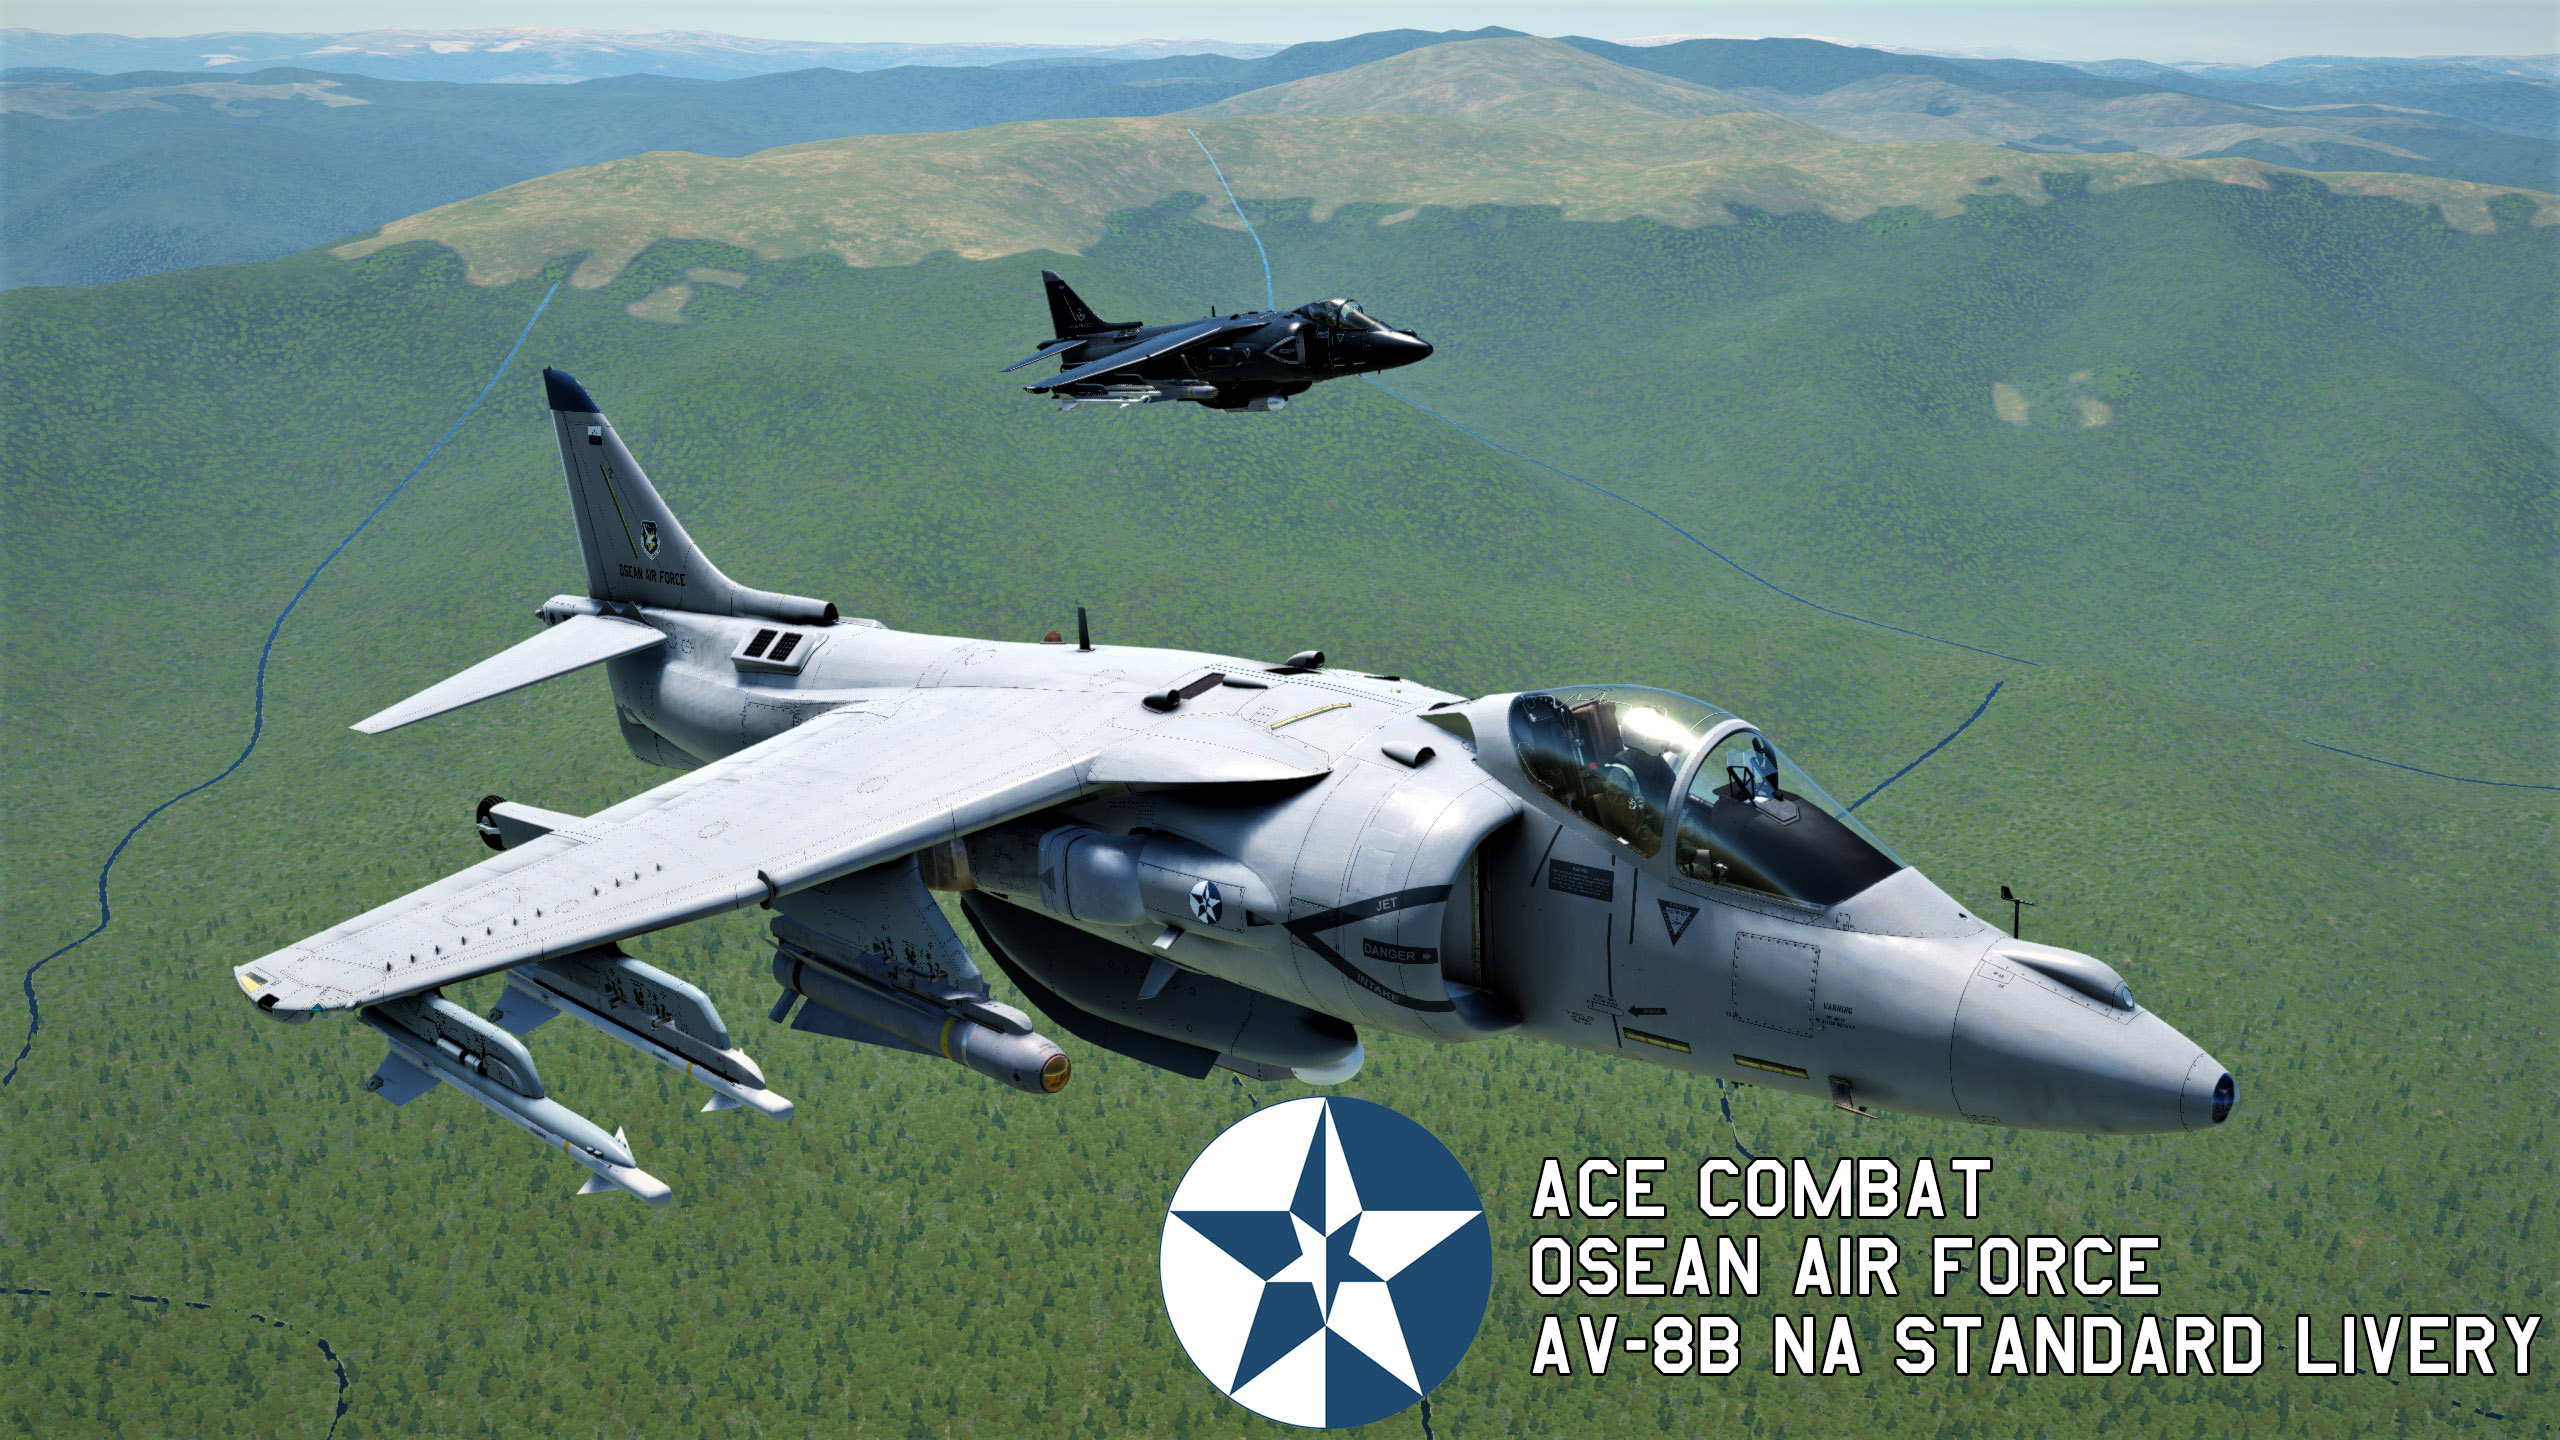 Ace combat 8. Ace Combat av-8b Harrier II. Ace Combat osea.